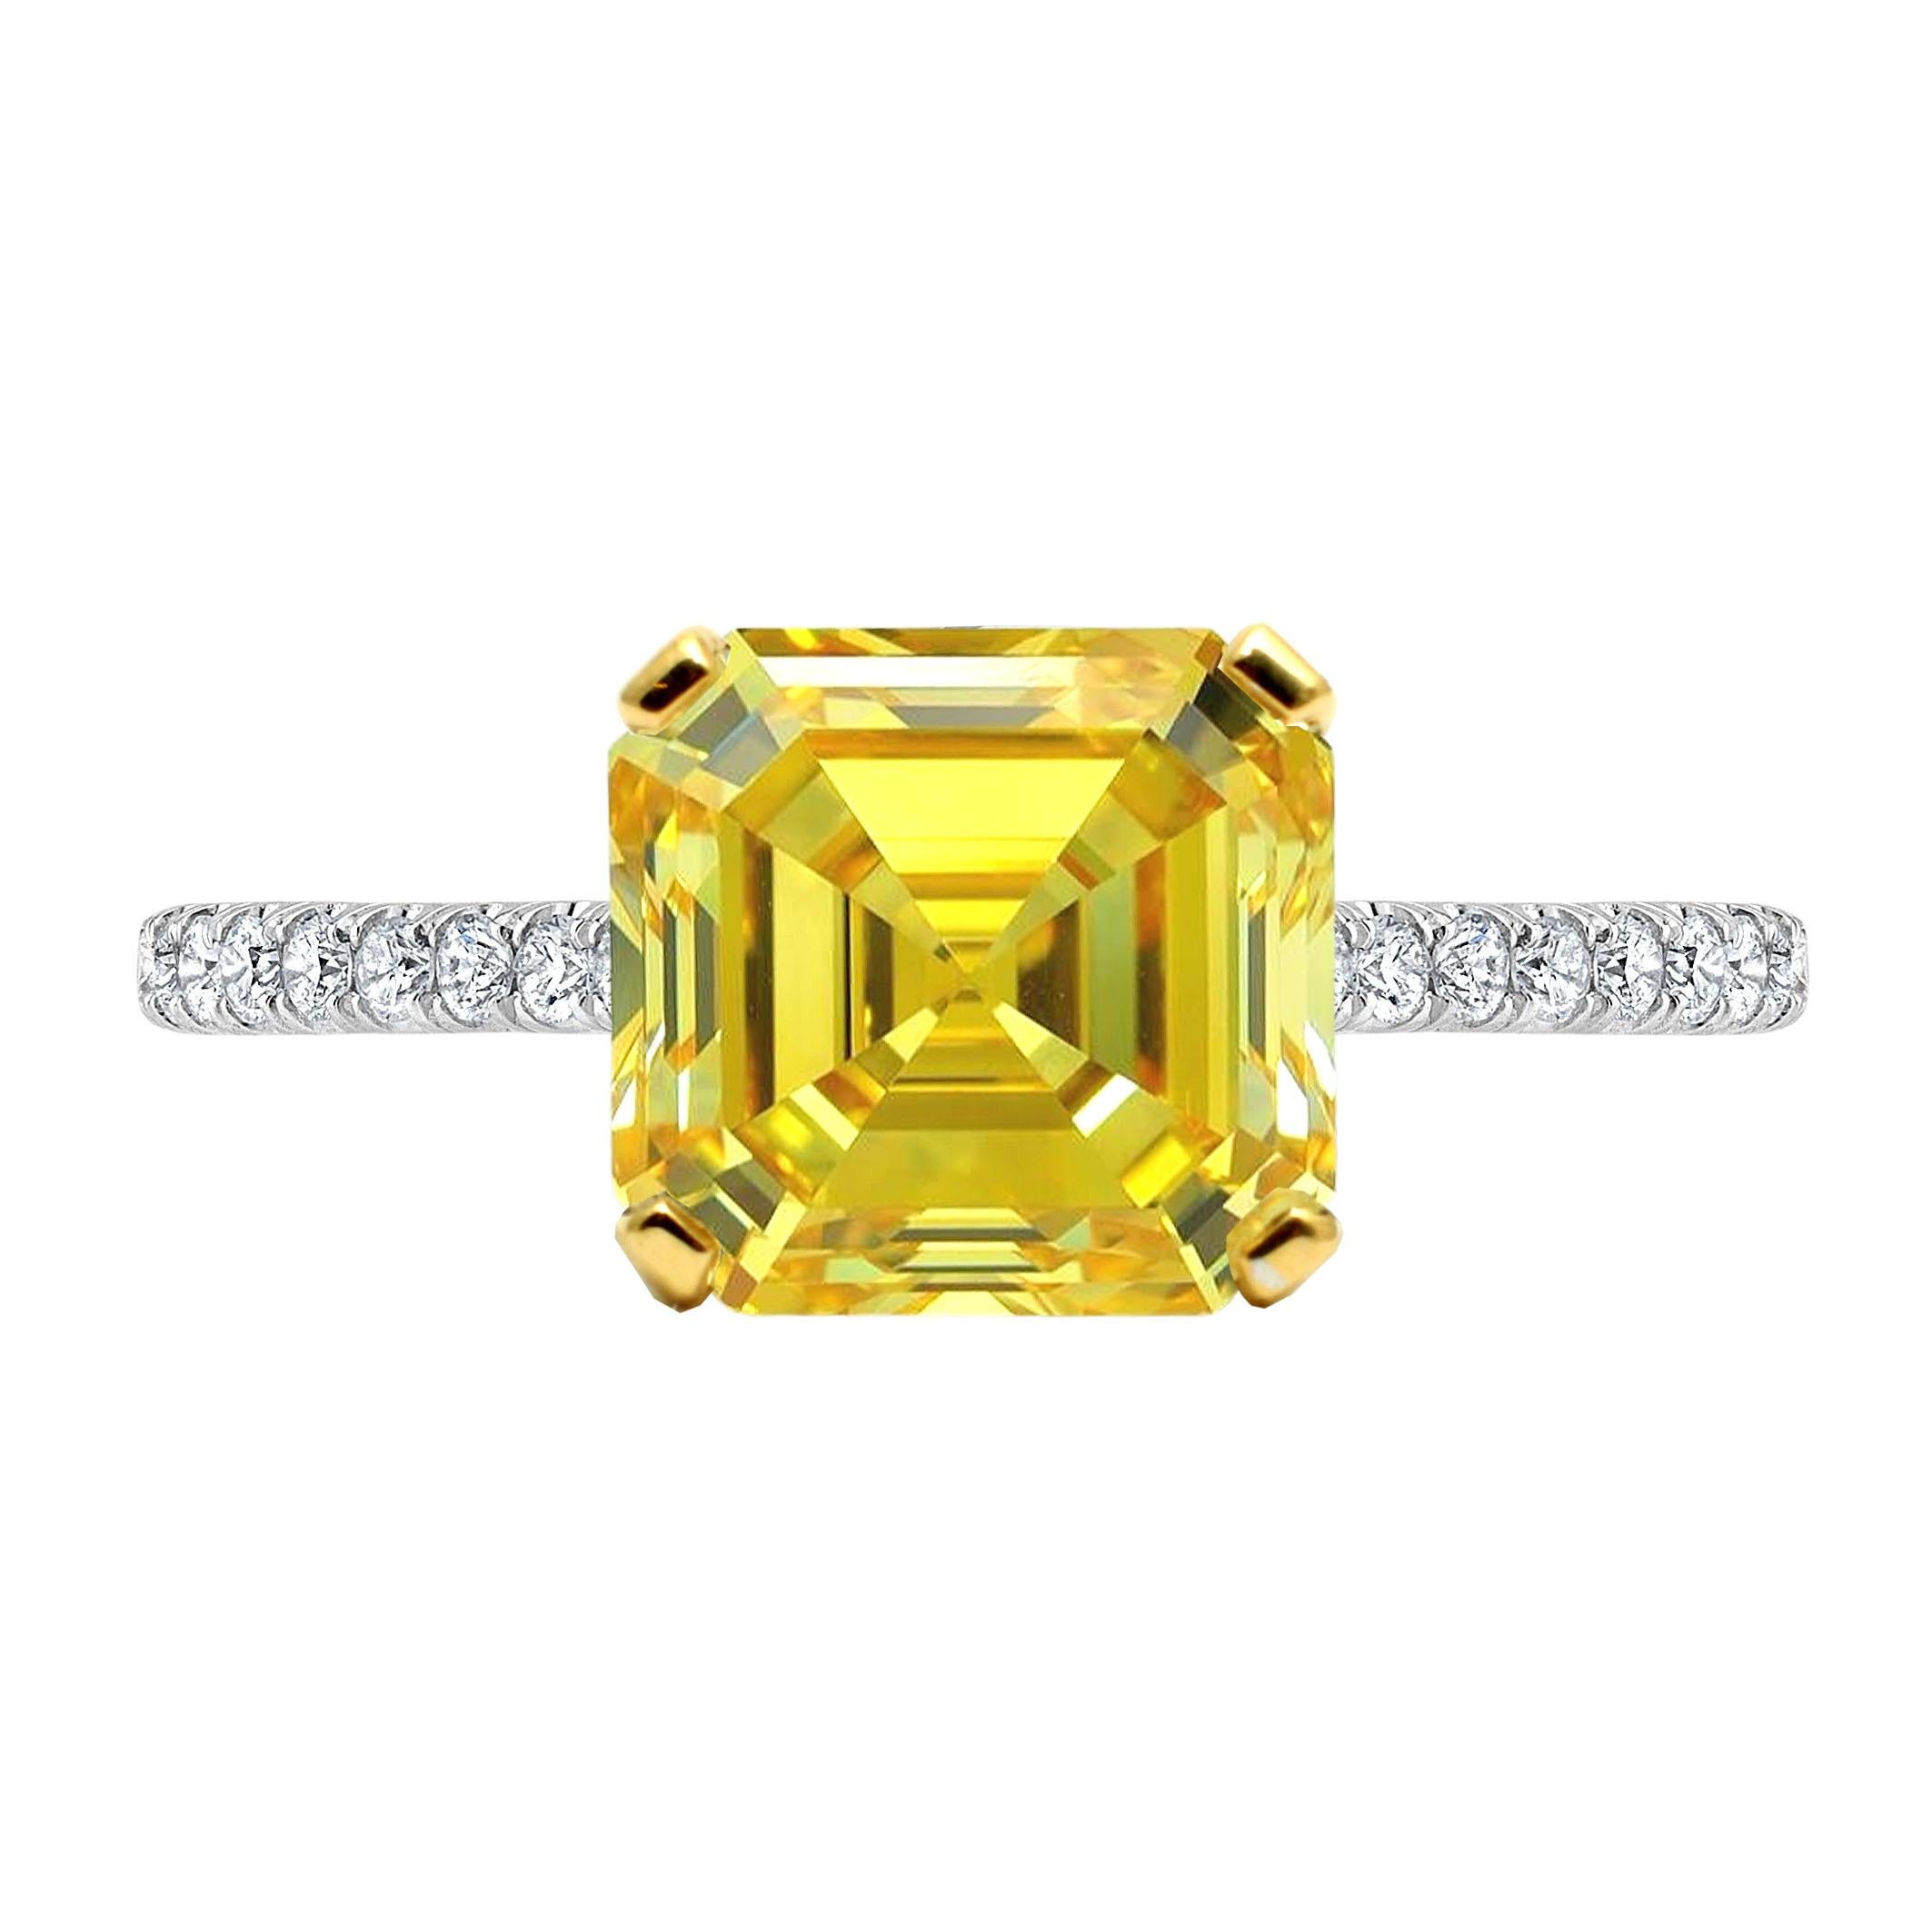 Dieser GIA-zertifizierte 3,18-karätige Asscher Fancy Vivid Yellow Diamond Ring mit Pavé-Diamanten ist von unvergleichlicher Eleganz. In seinem Zentrum glänzt ein faszinierender Diamant im Asscher-Schliff von außergewöhnlicher Qualität, zertifiziert